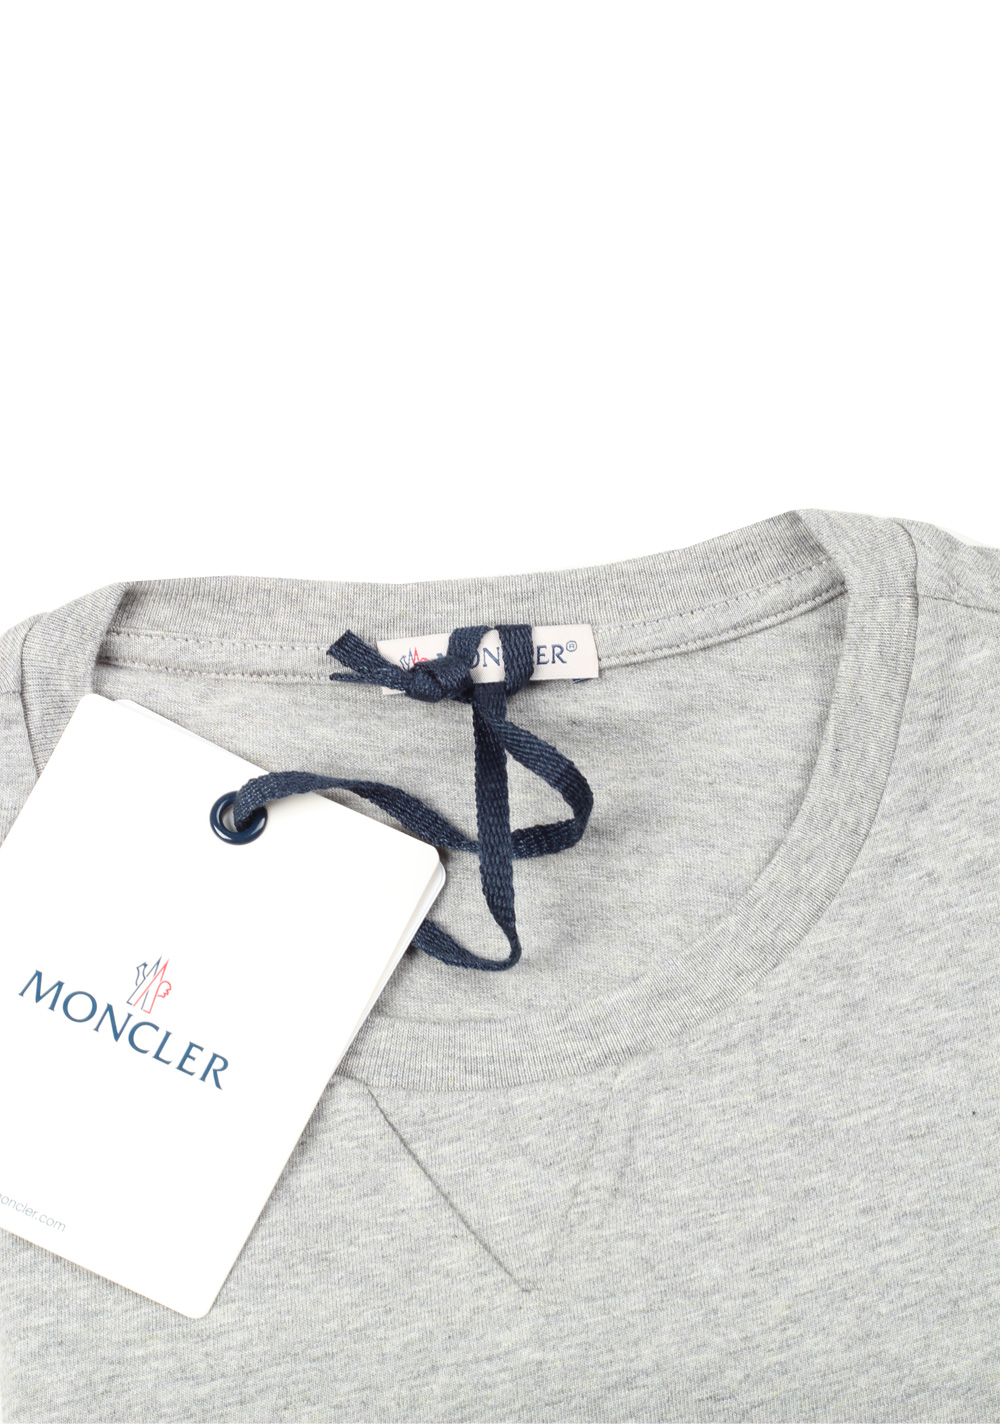 Moncler Crew Neck Tee Gray Shirt Size M / 38R U.S. | Costume Limité